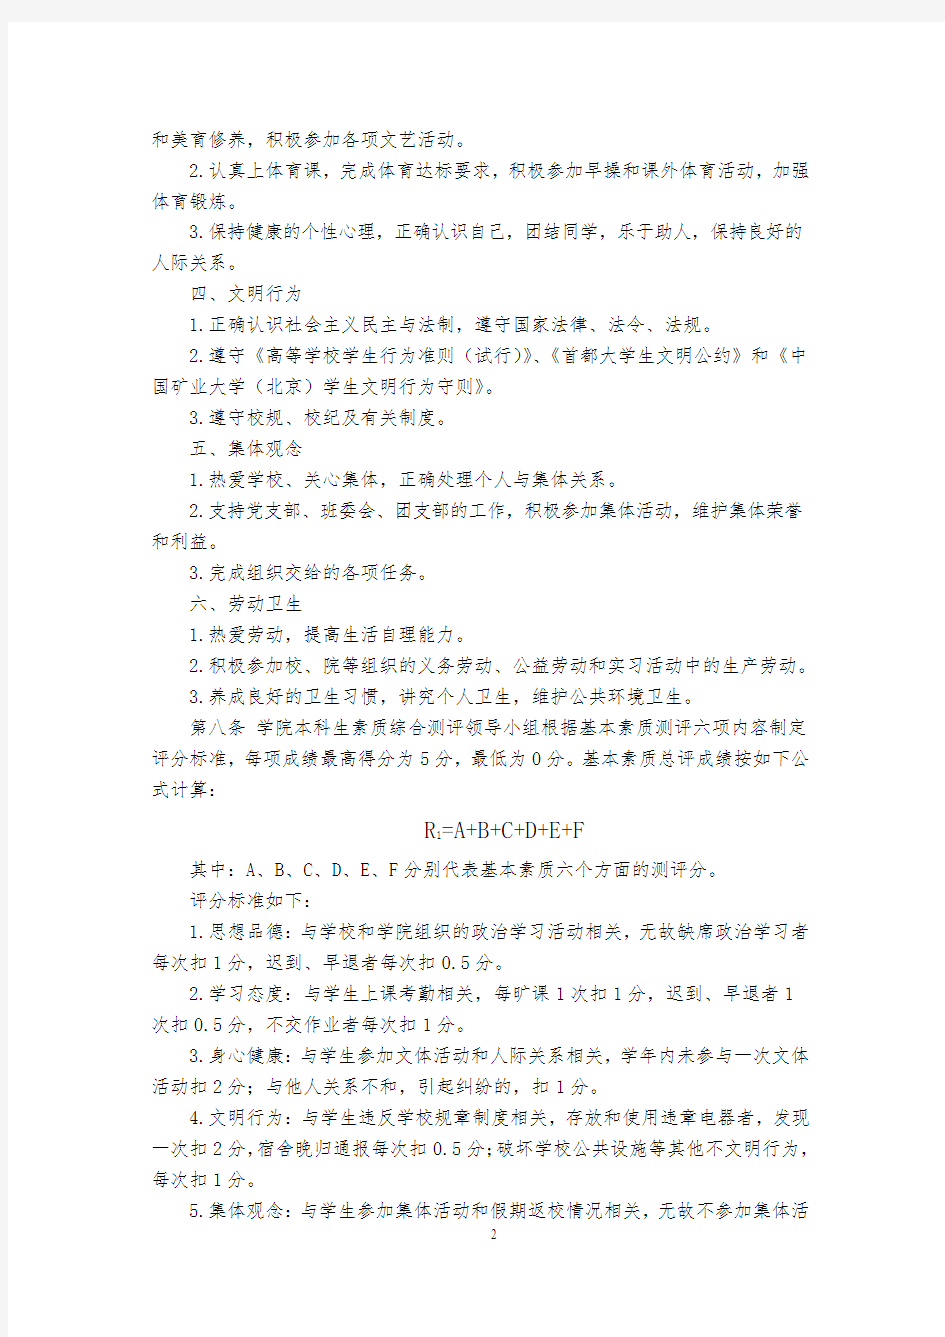 中国矿业大学(北京)本科生素质综合测评办法(修订版)